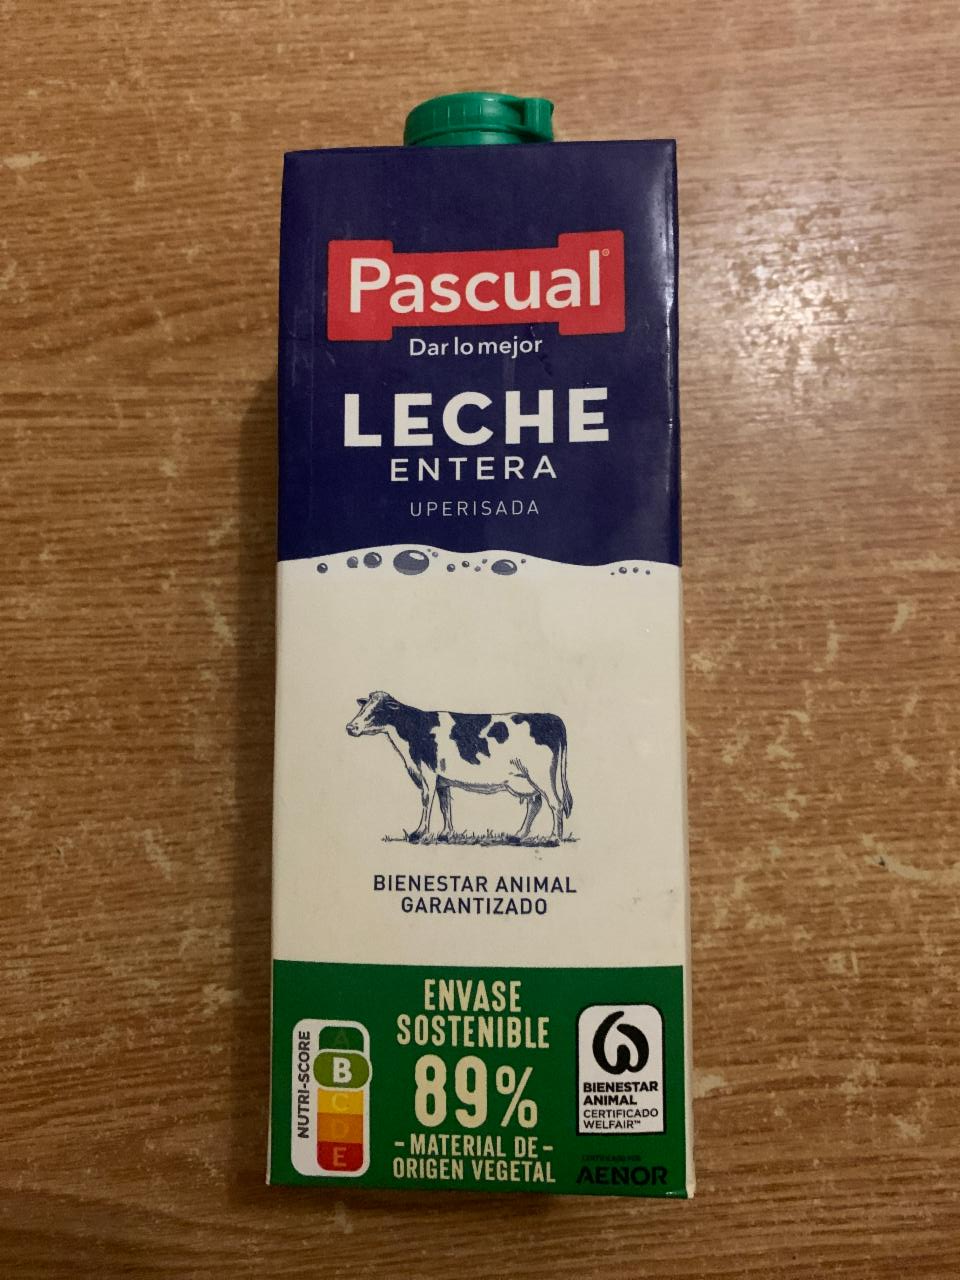 Фото - Молоко 3.6% Leche Entera Pascual